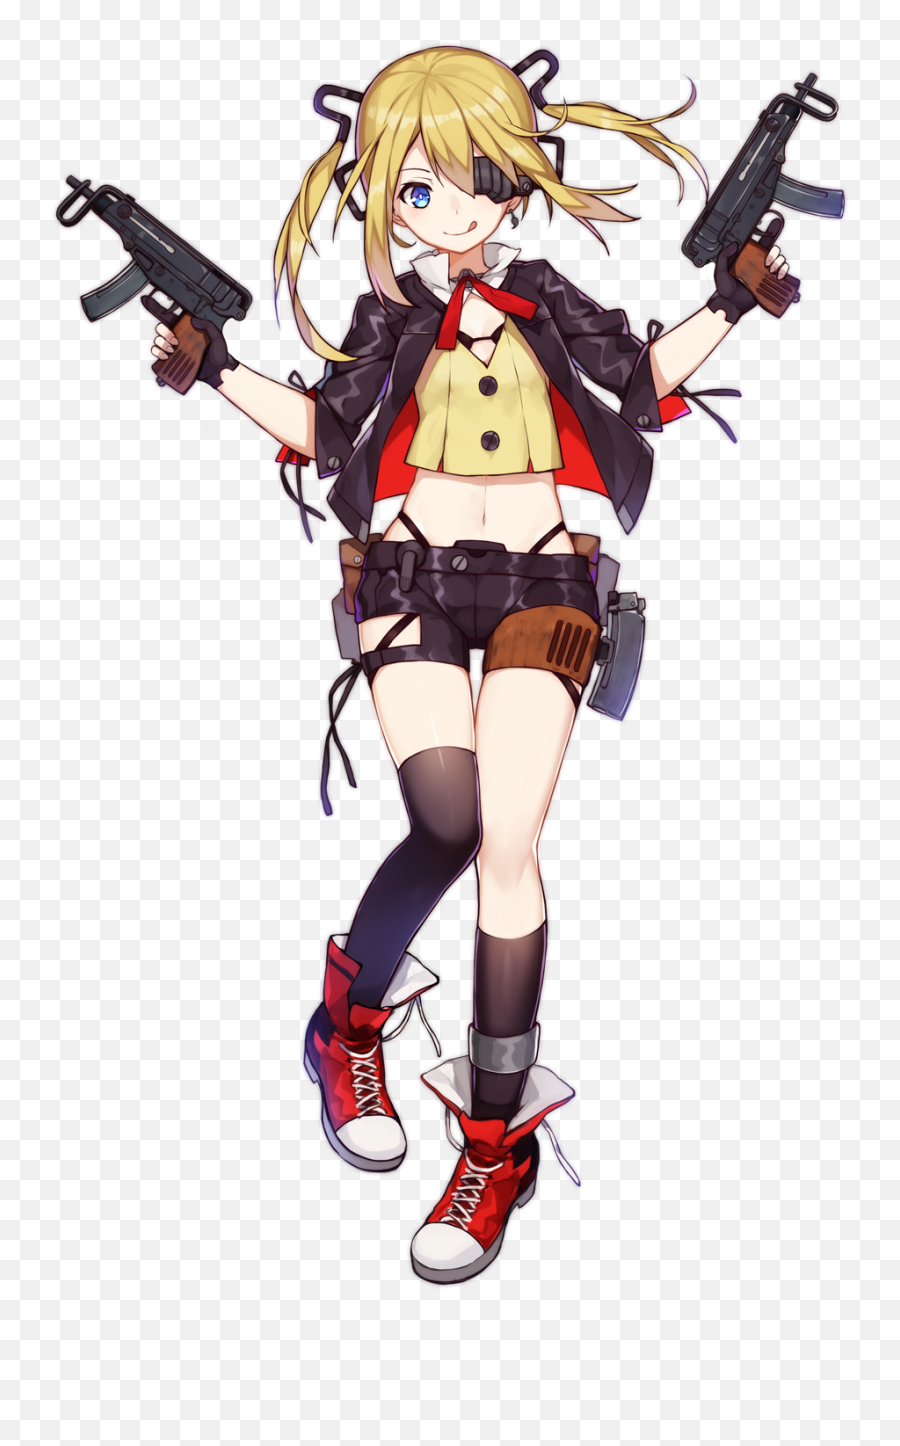 Anime Girls Guns - Girls Frontline Vz 61 Emoji,Anime Emotion Detector Gun